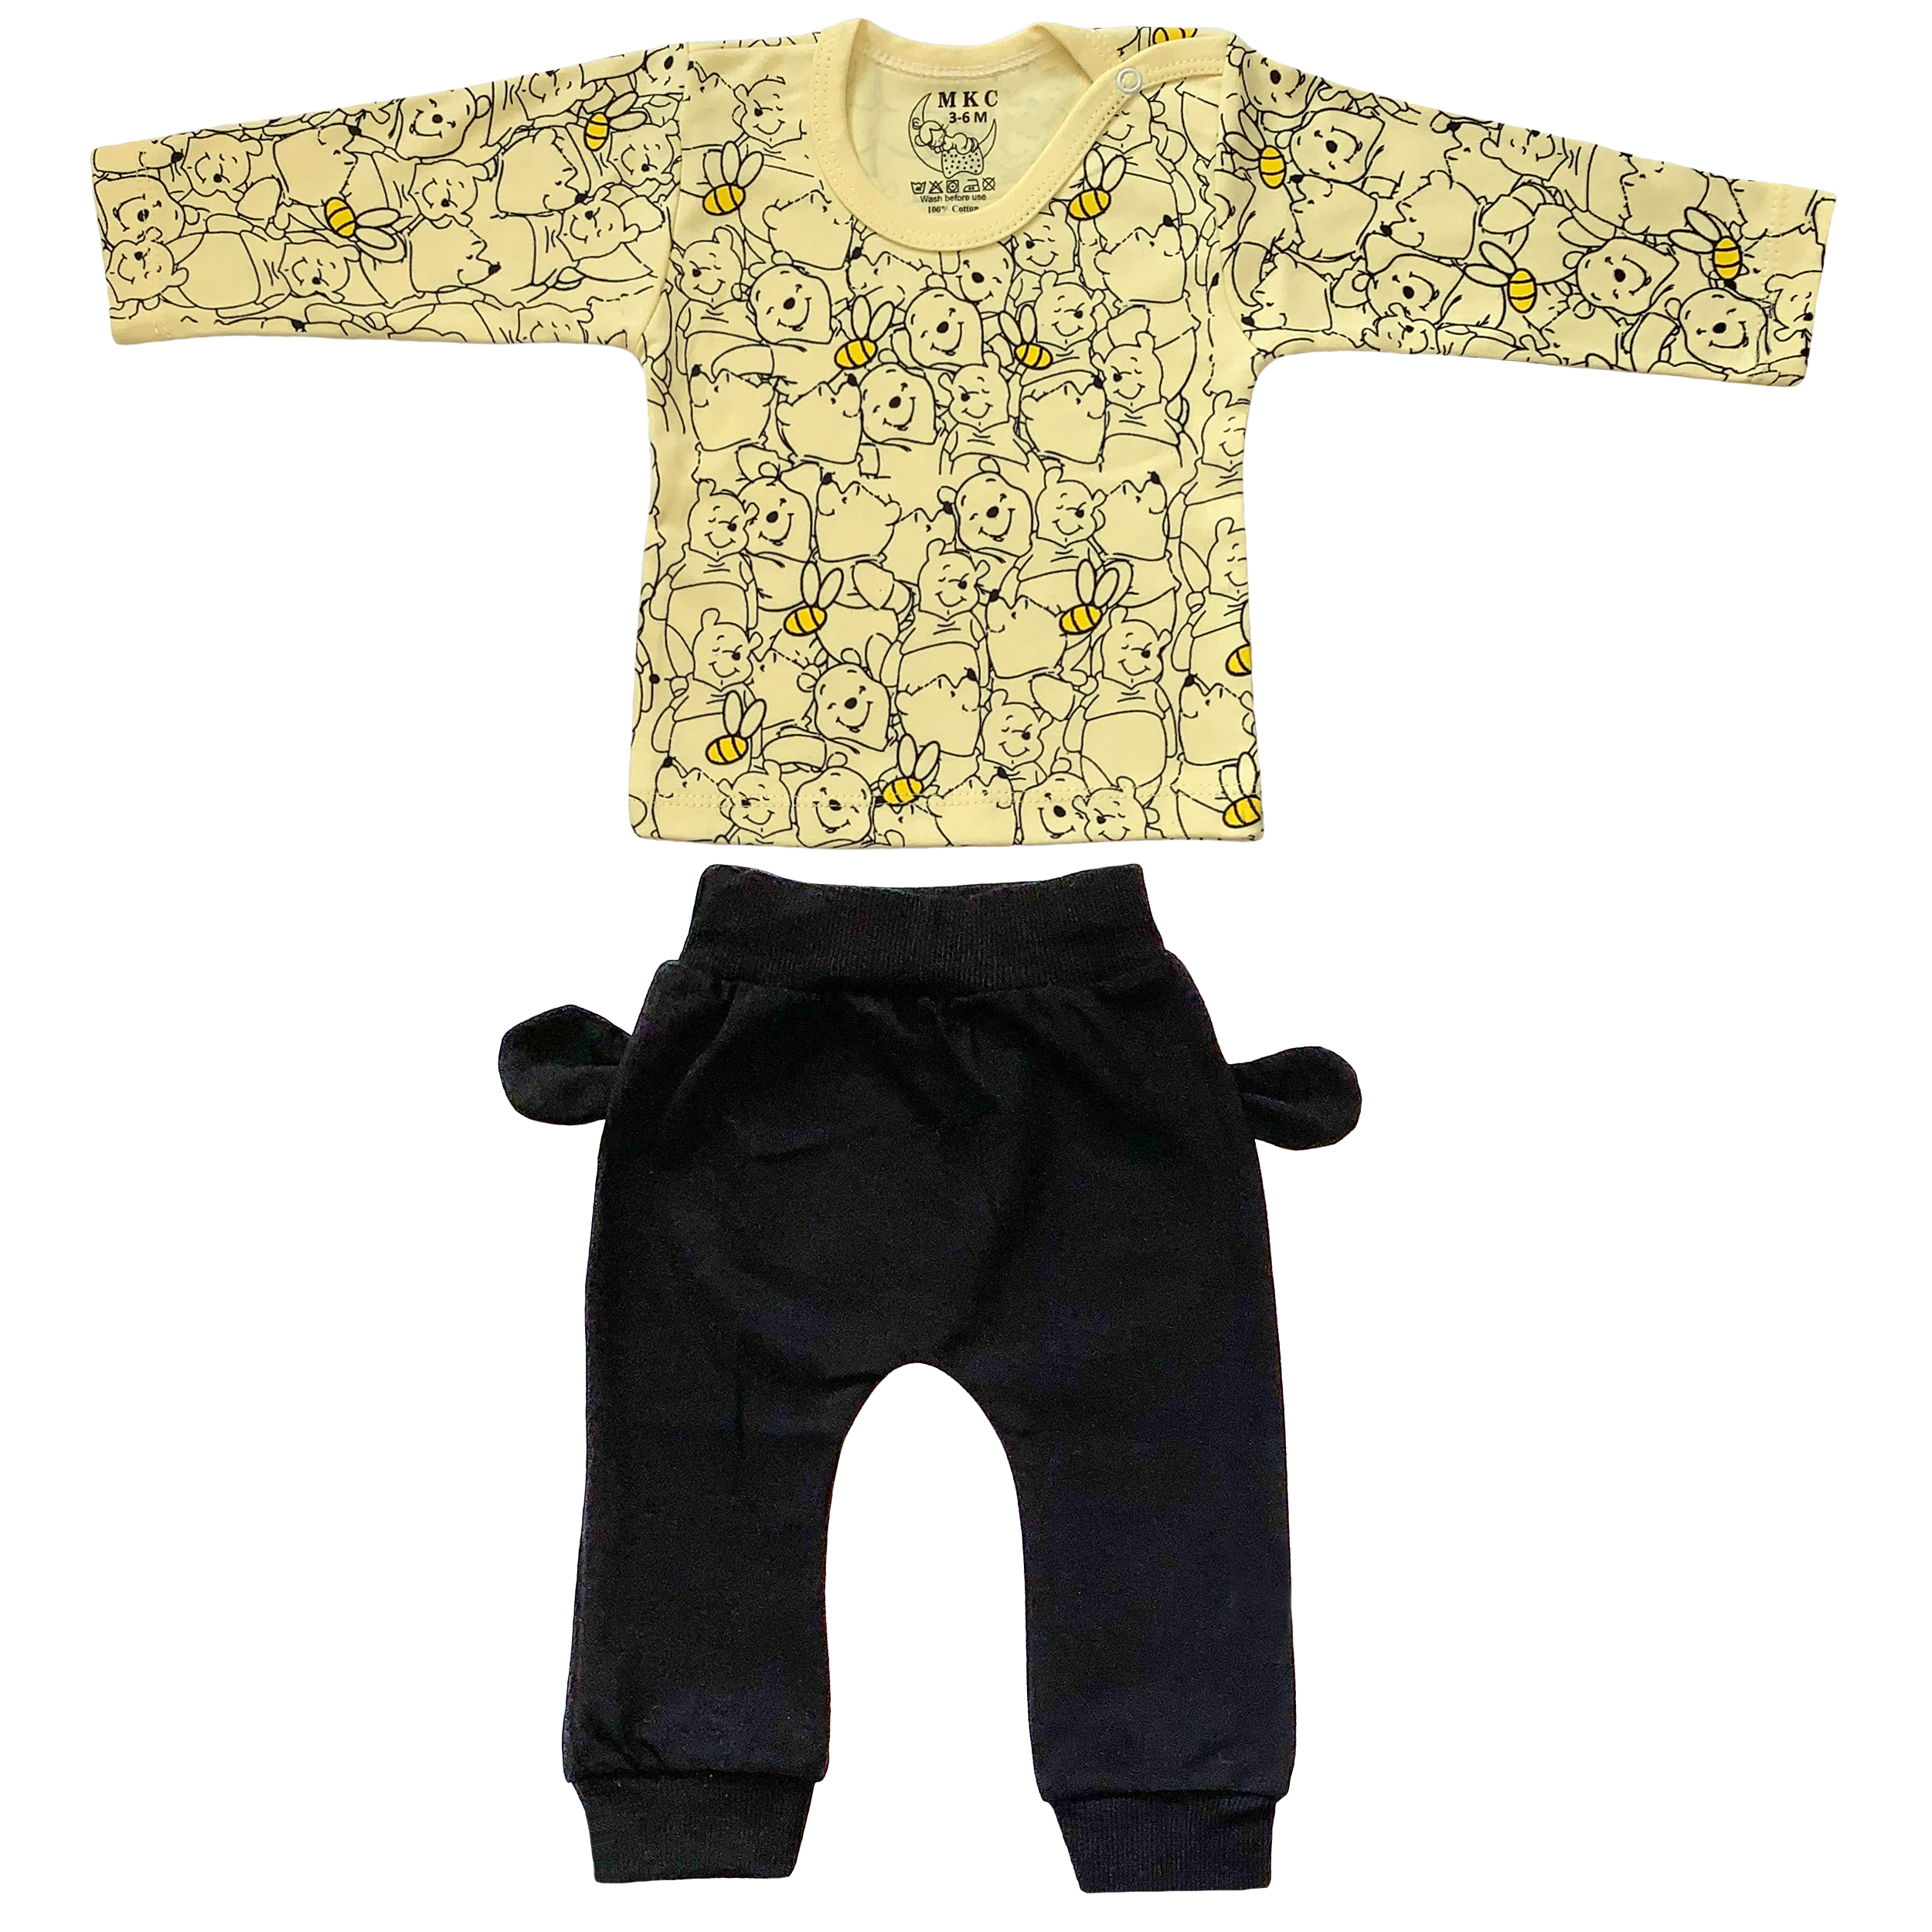  ست تی شرت و شلوار نوزادی طرح پو کد FF-084  -  - 1